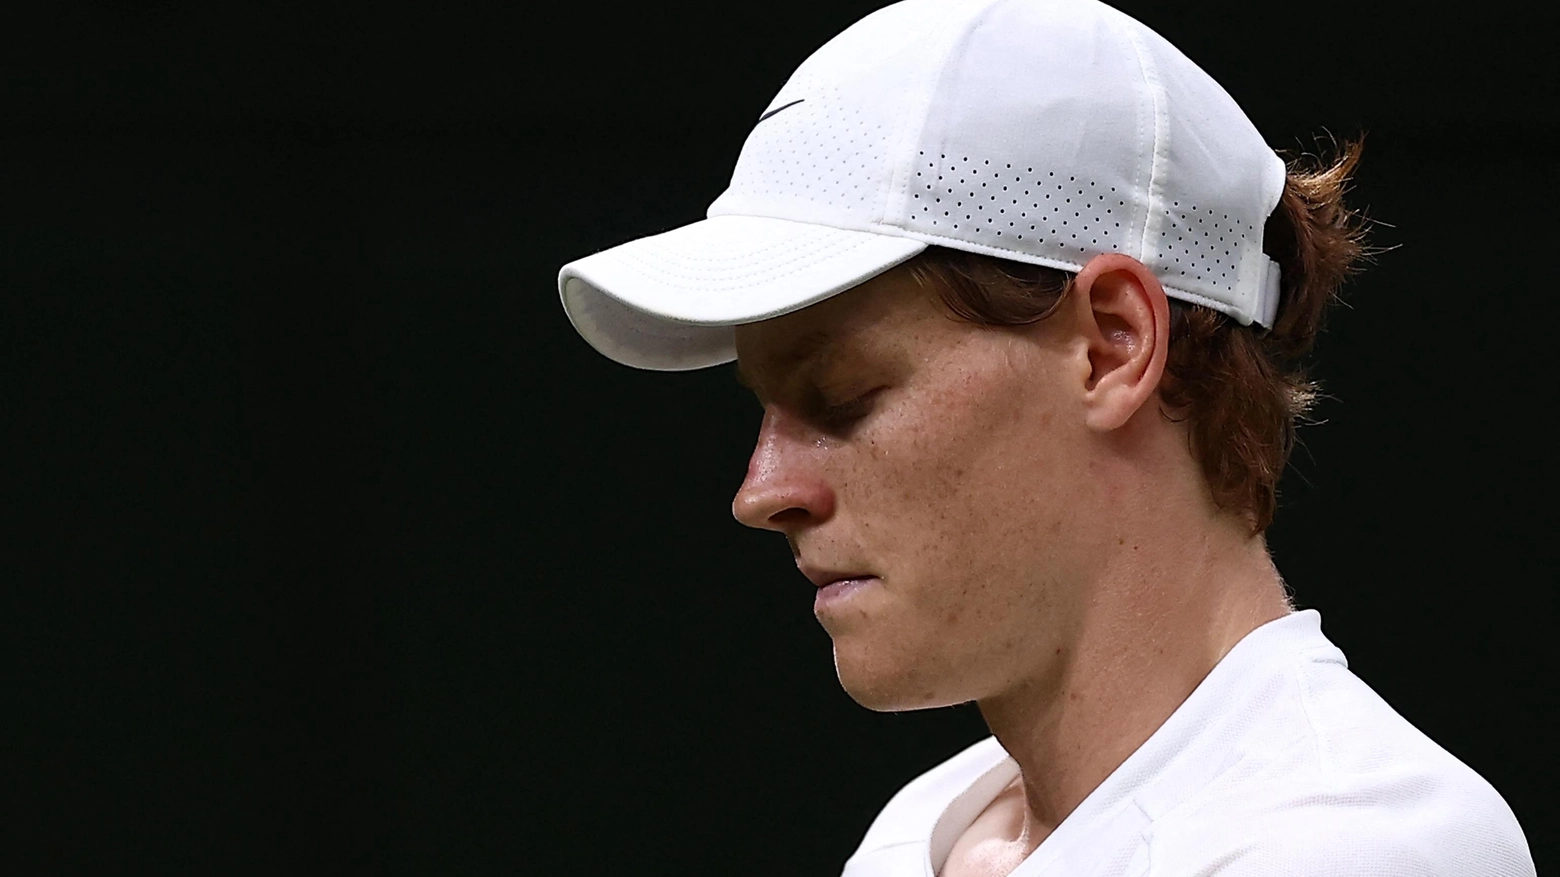 L'altoatesino lascia Wimbledon al termine di una maratona con quattro ore di gioco e un malore dopo due set, alla fine vince Medvedev al quinto